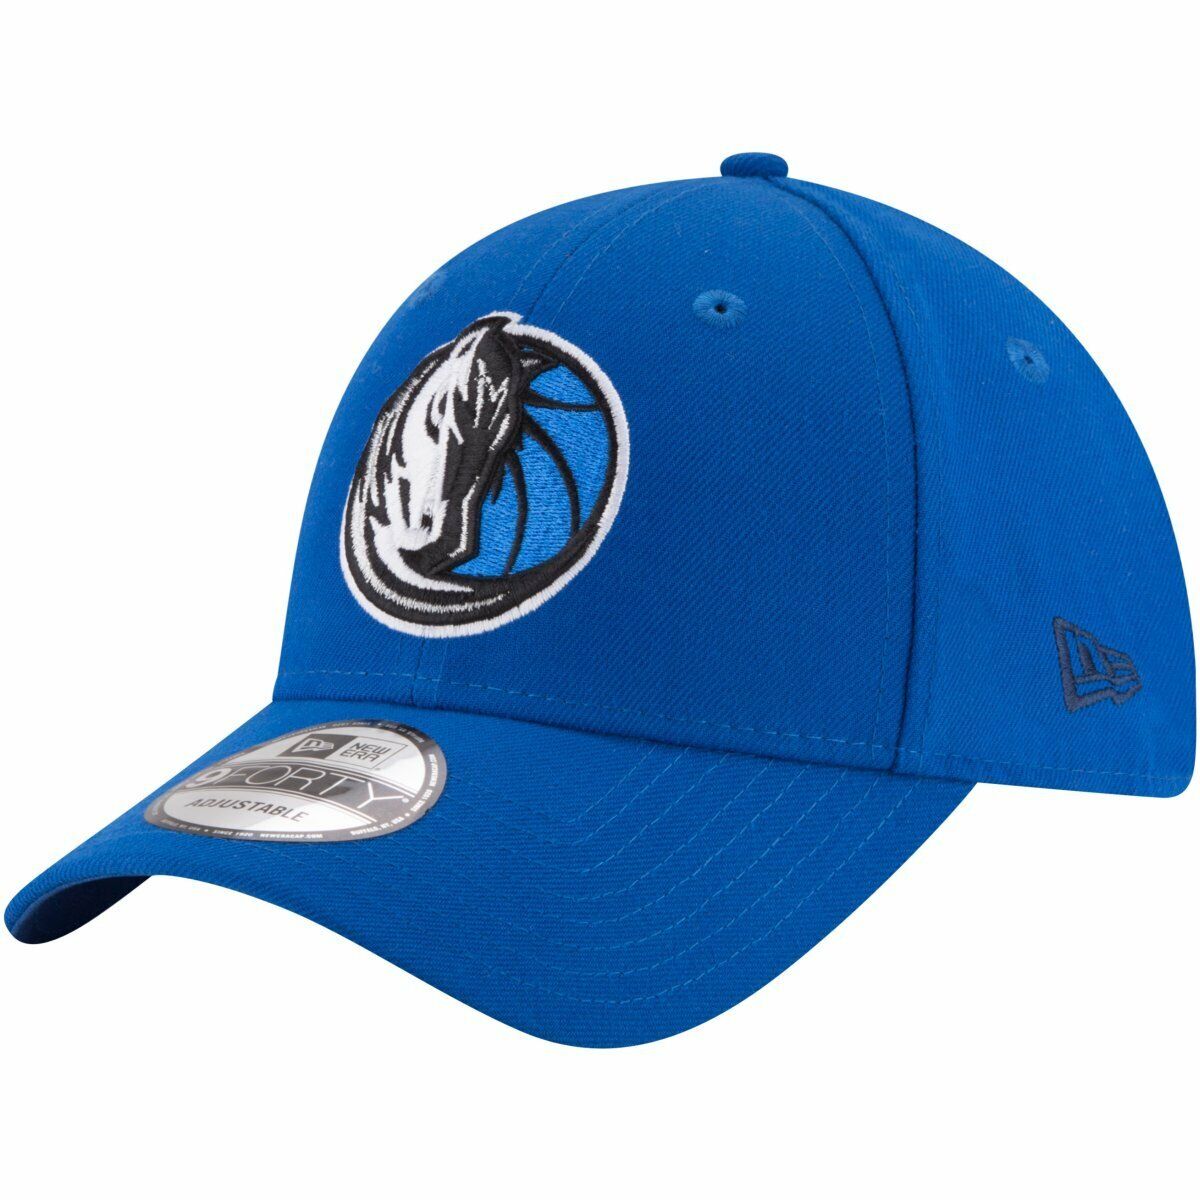 قبعة فريق دالاس مافريكس قابلة للتعديل من النوع The League